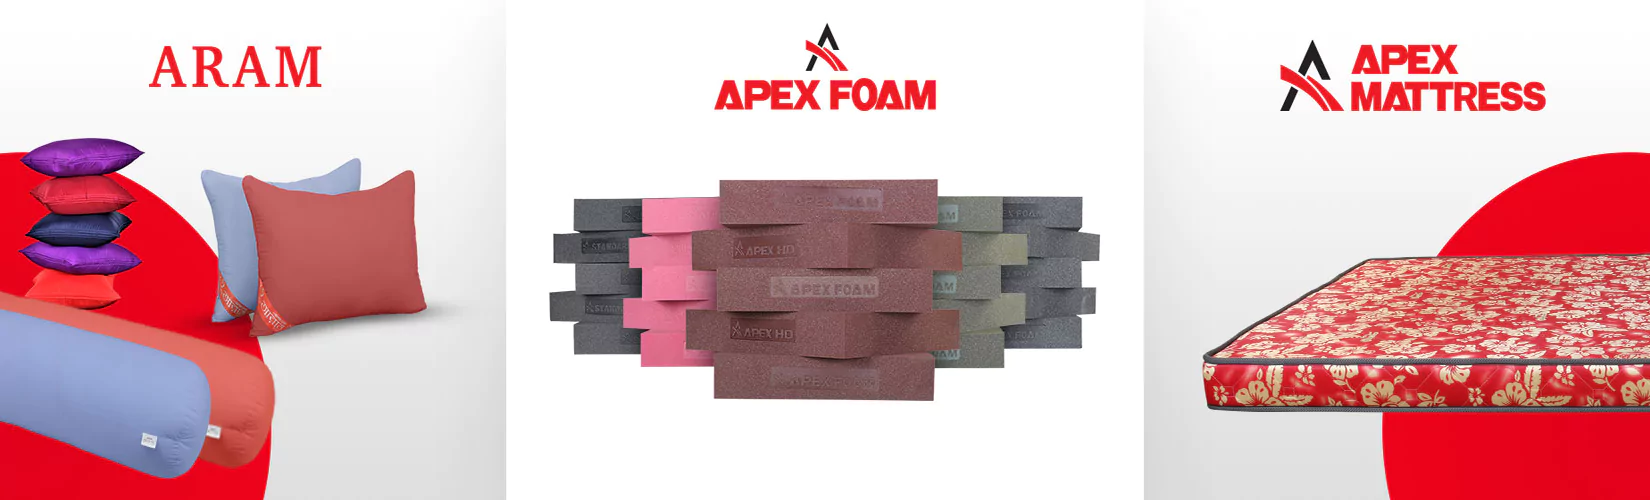 Apex Foam Mattress Aram Three